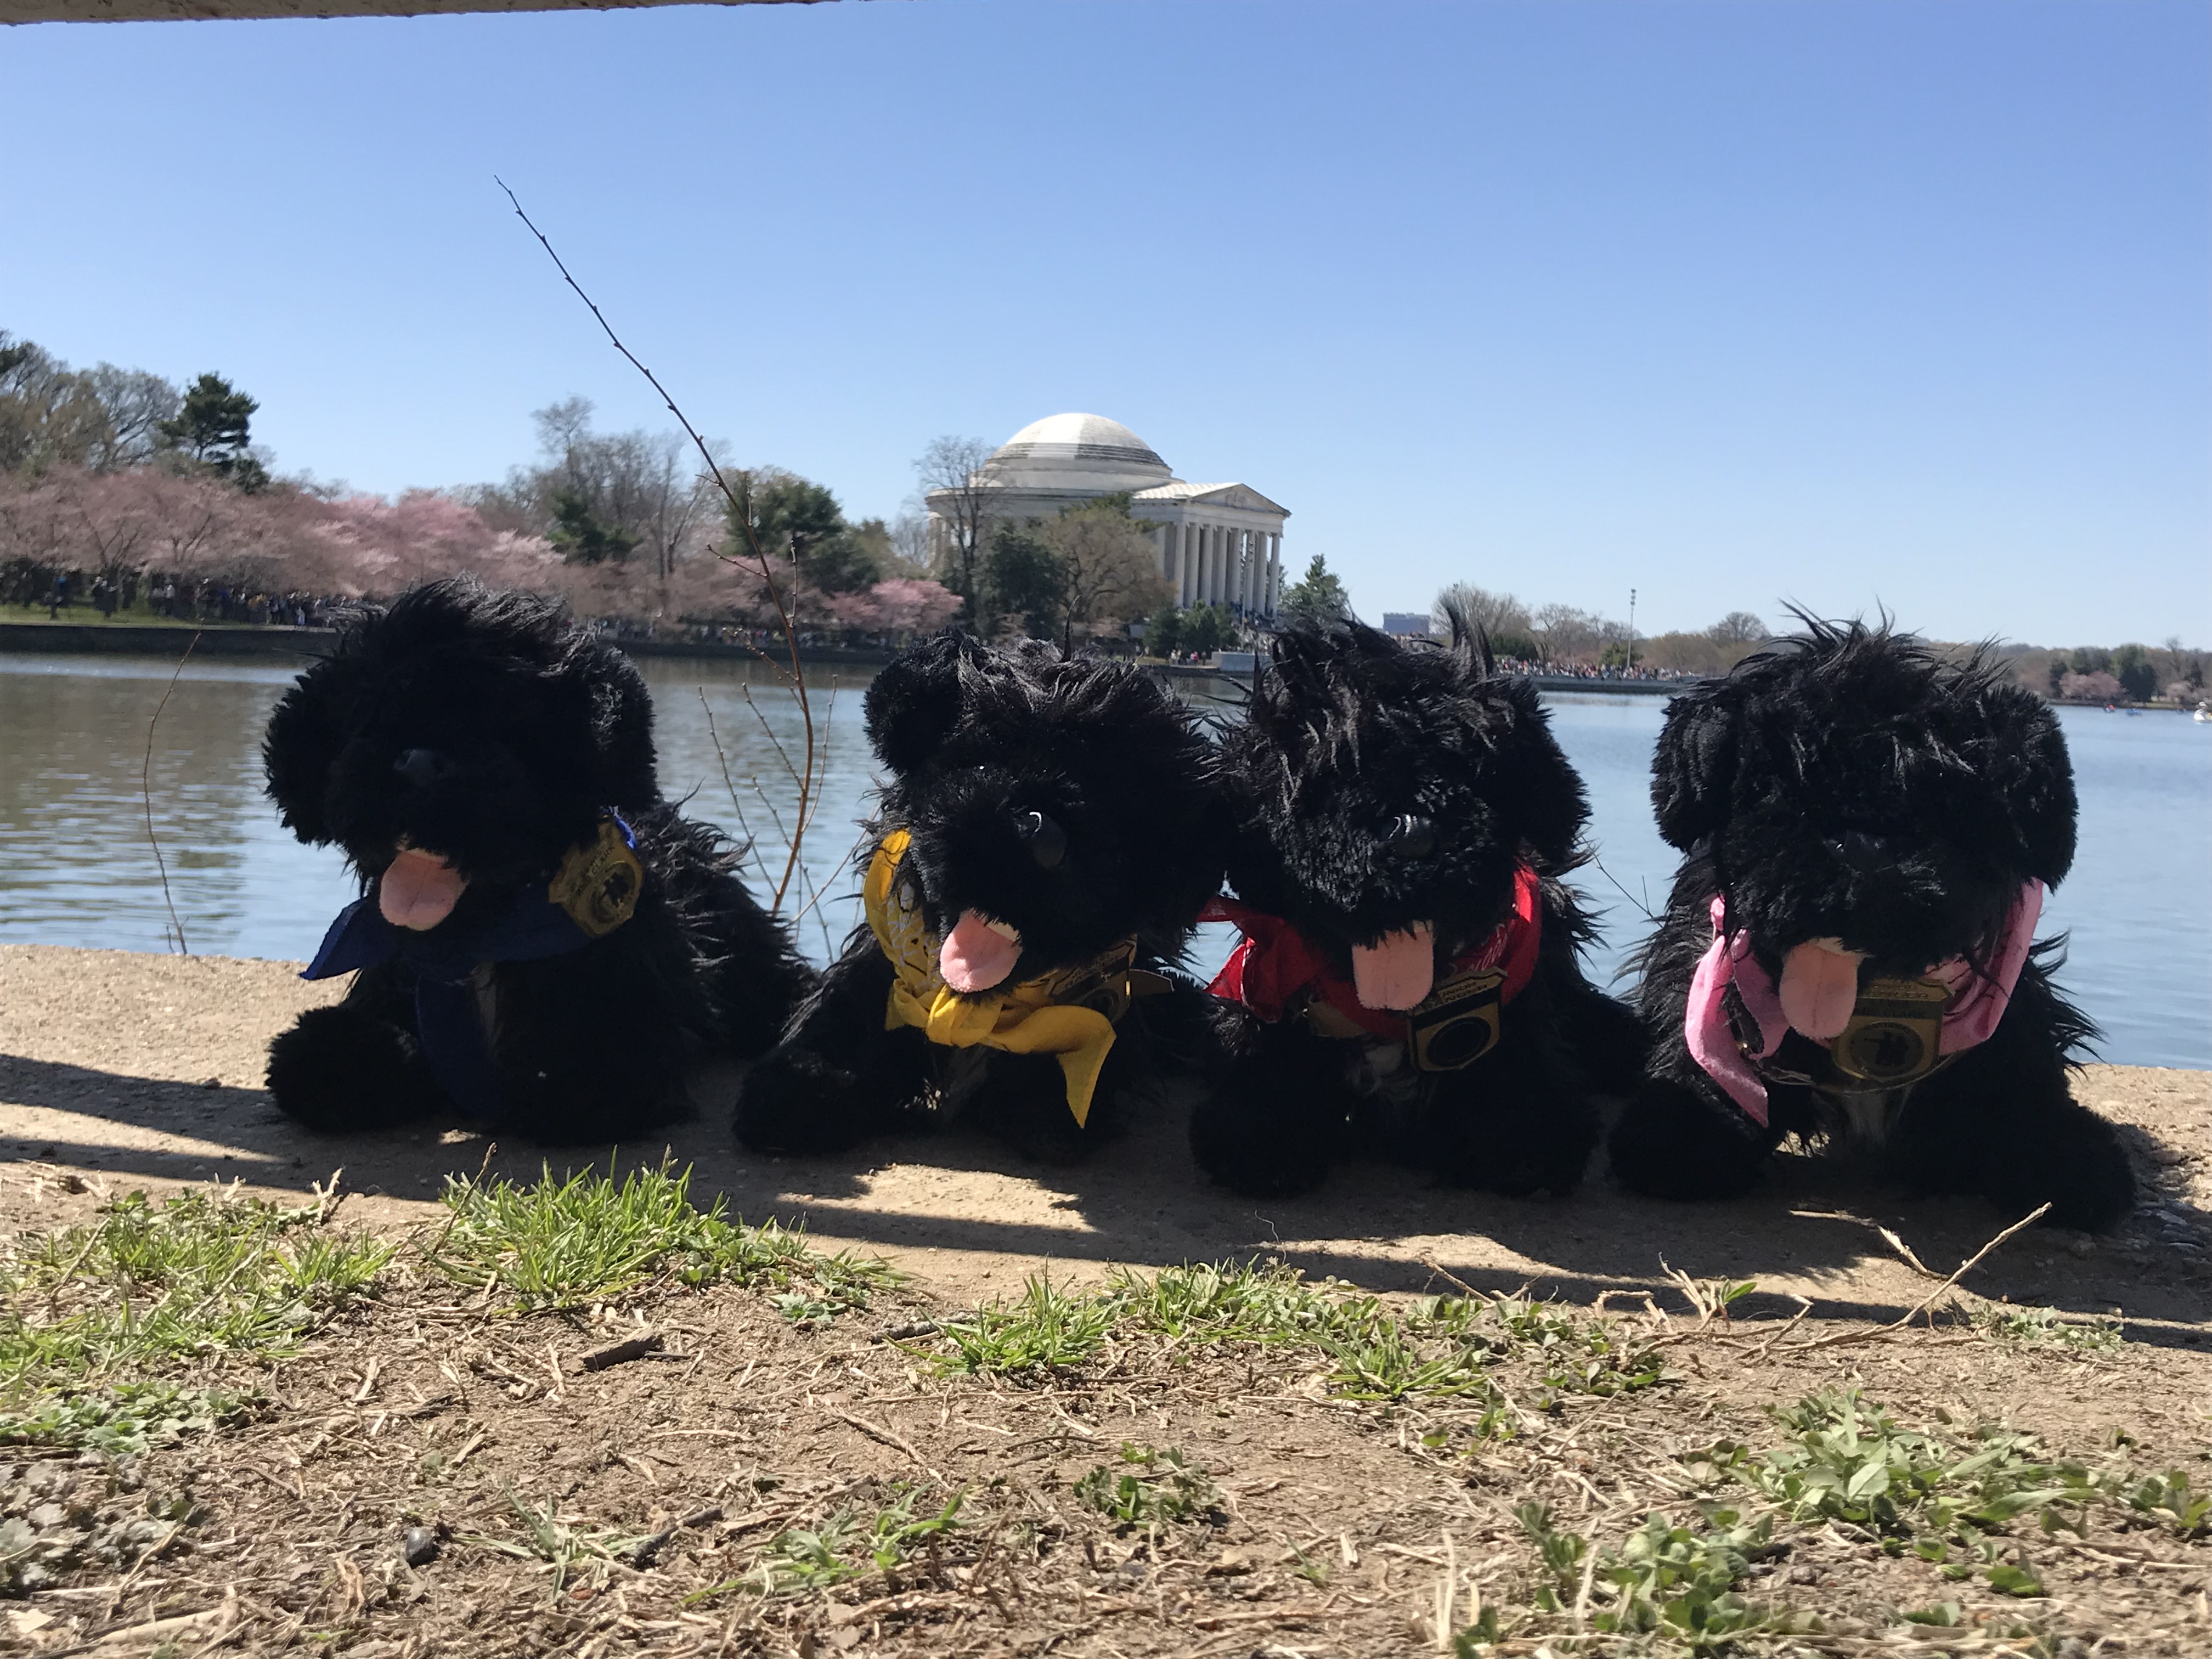 stuffed dogs near water